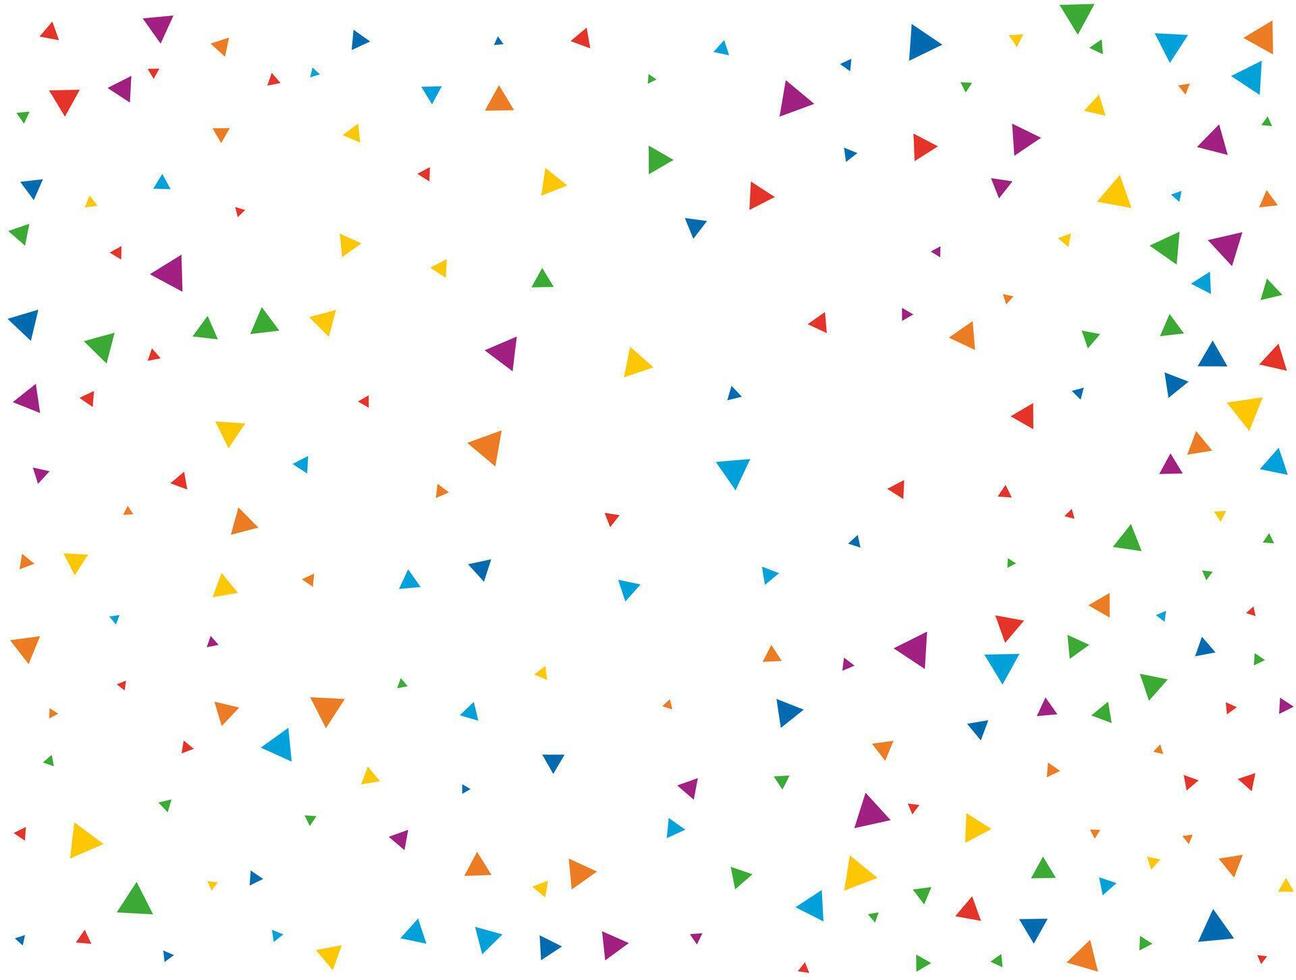 Wedding Triangular Confetti. Light Rainbow glitter confetti background. Colored festive texture vector